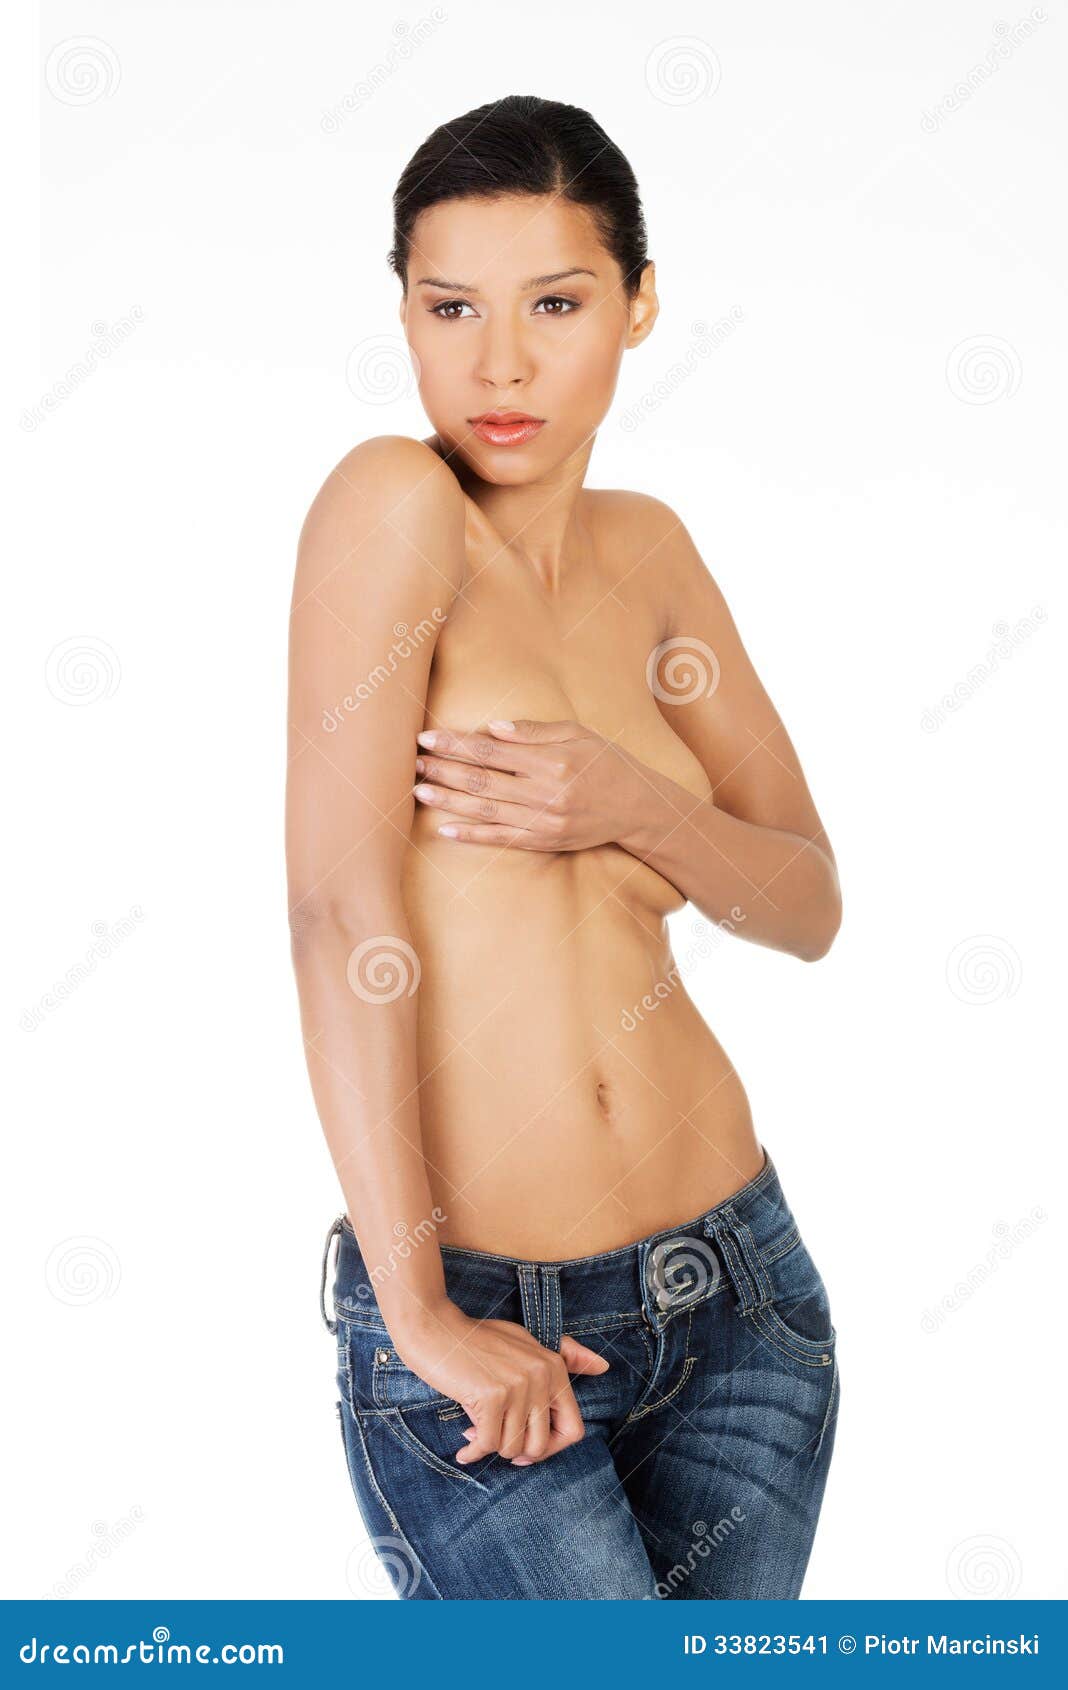 christine hetzel add topless women in blue jeans photo